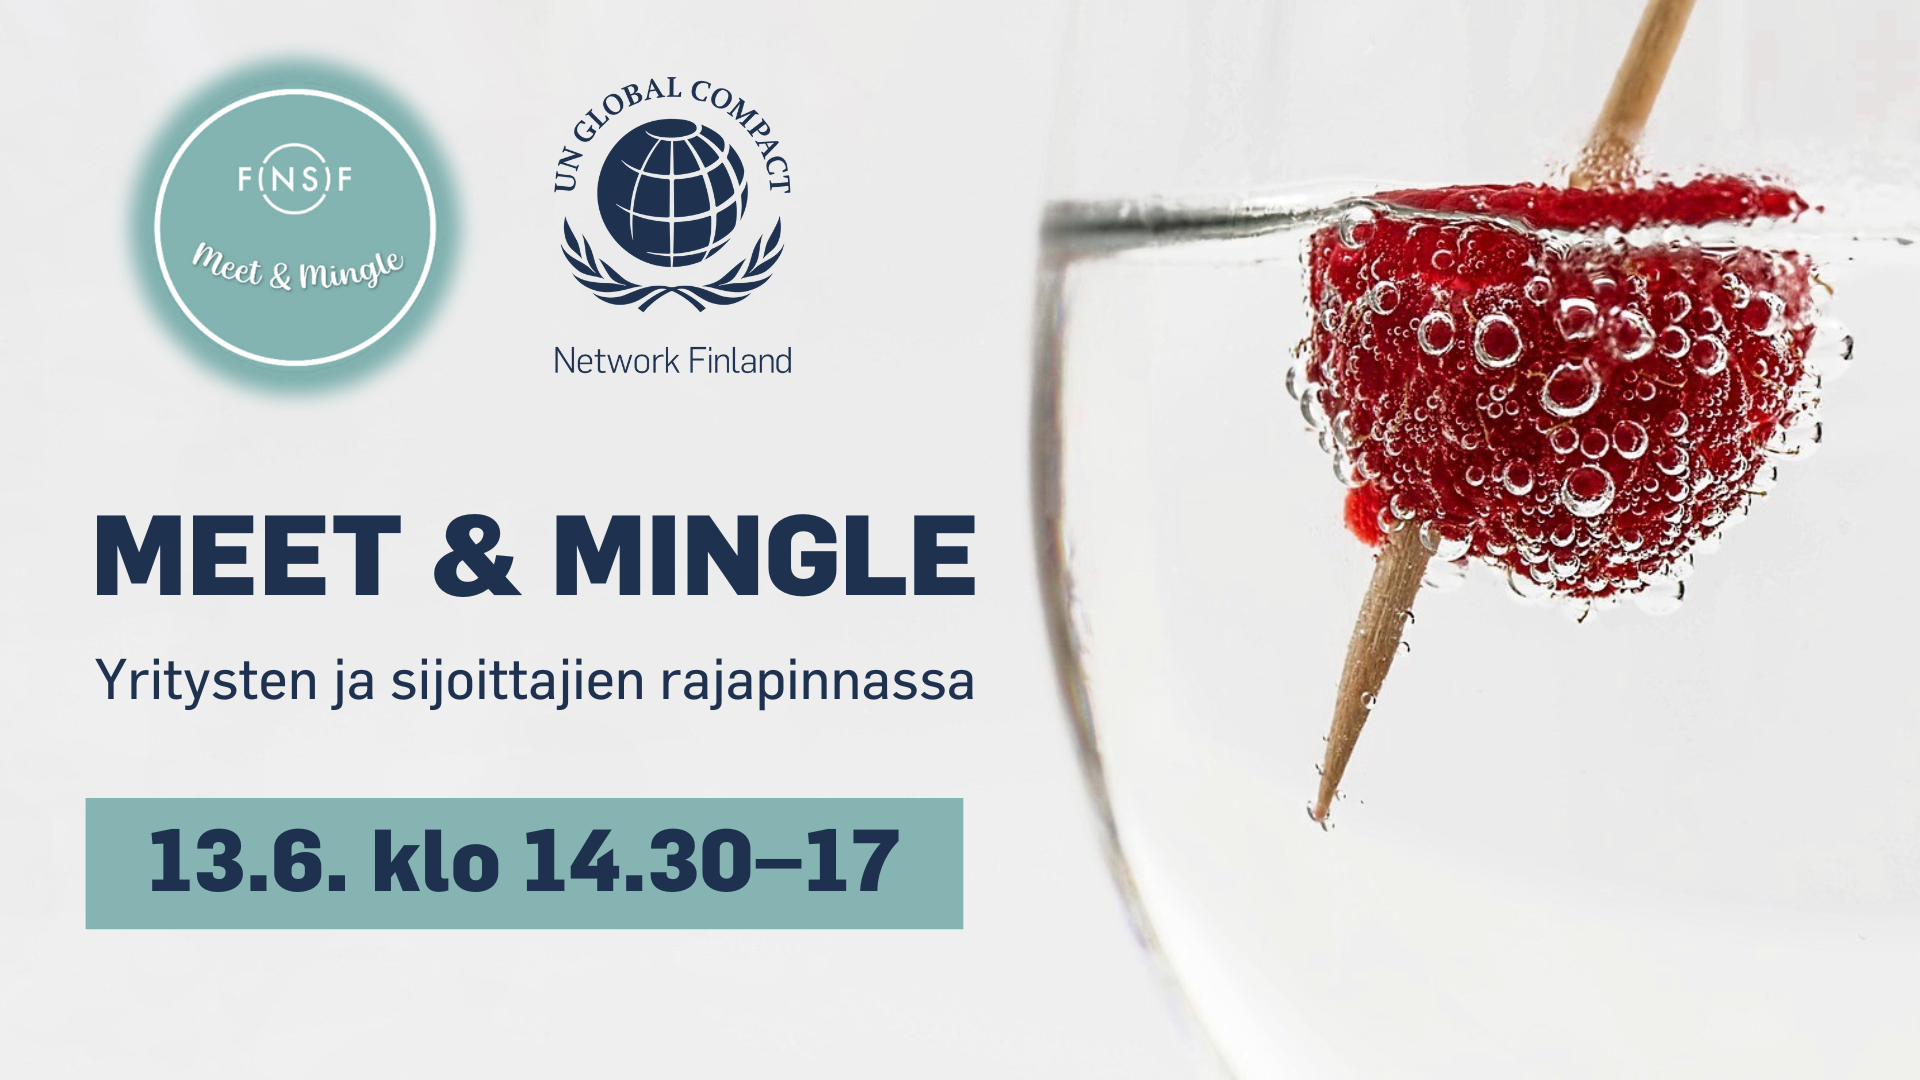 Tervetuloa Finsifin ja UN Global Compact Suomen yhteiseen Meet & Mingle -tilaisuuteen, joka tarjoaa rajapinnan aidolle kohtaamiselle yritysten ja sijoittajien välillä.